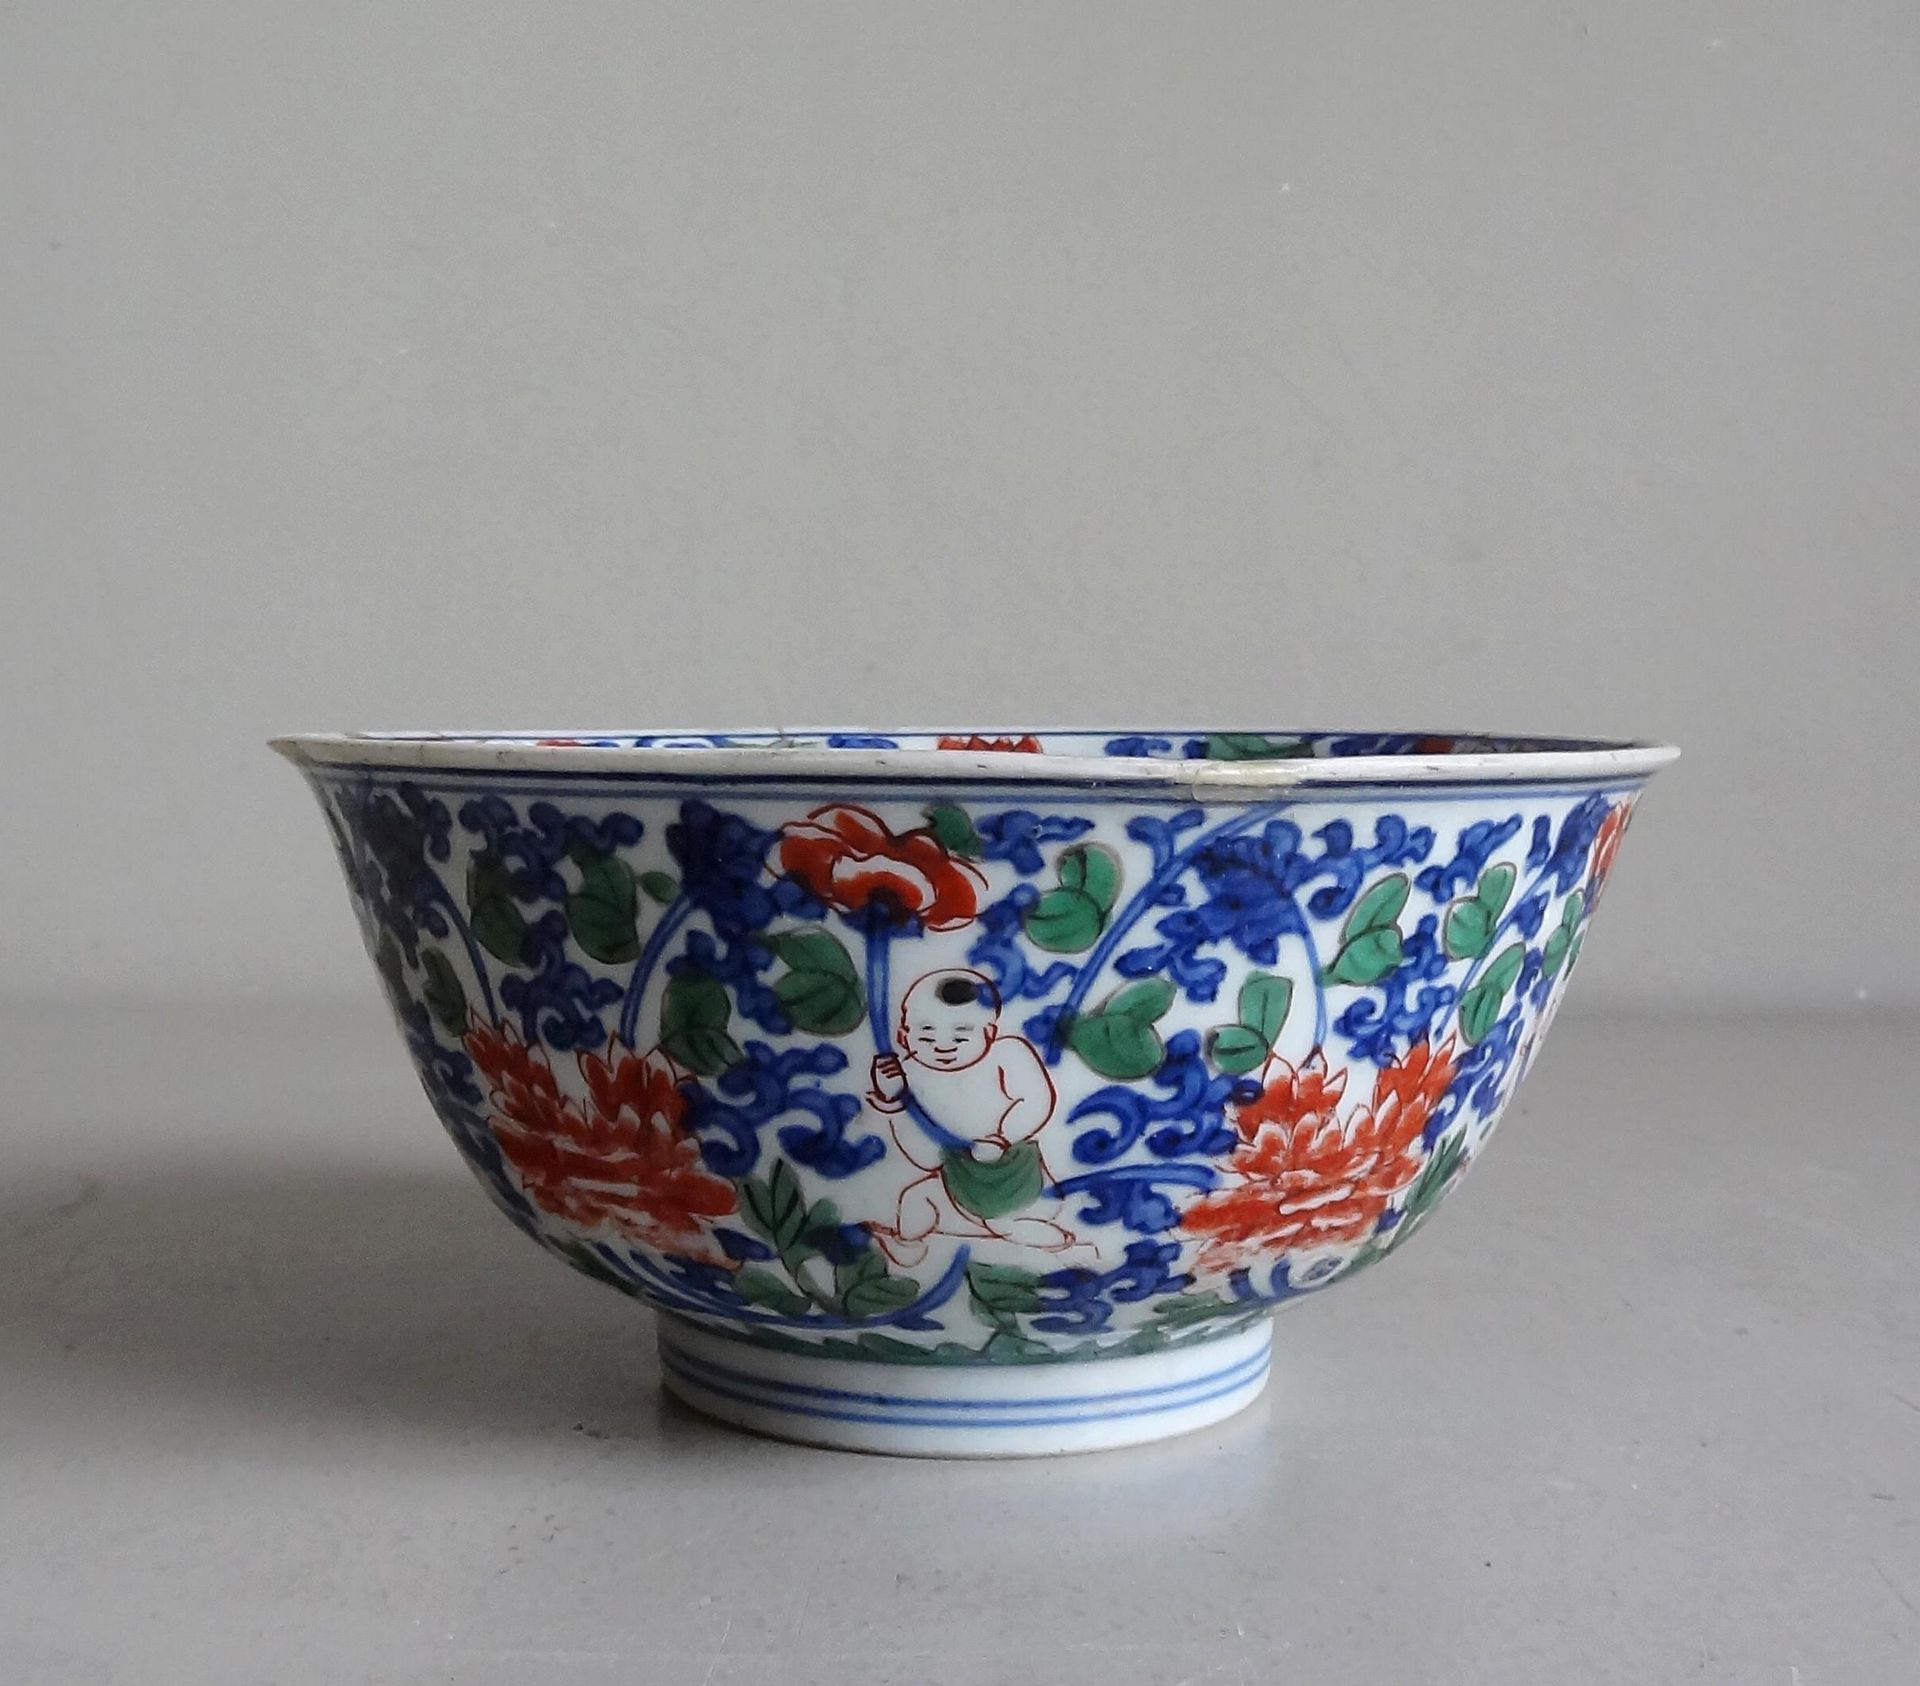 CHINE 中国

瓷碗在跟前，有儿童和花朵的多色装饰

19世纪

H.8厘米；D. 17.5厘米

破碎后重新粘在一起